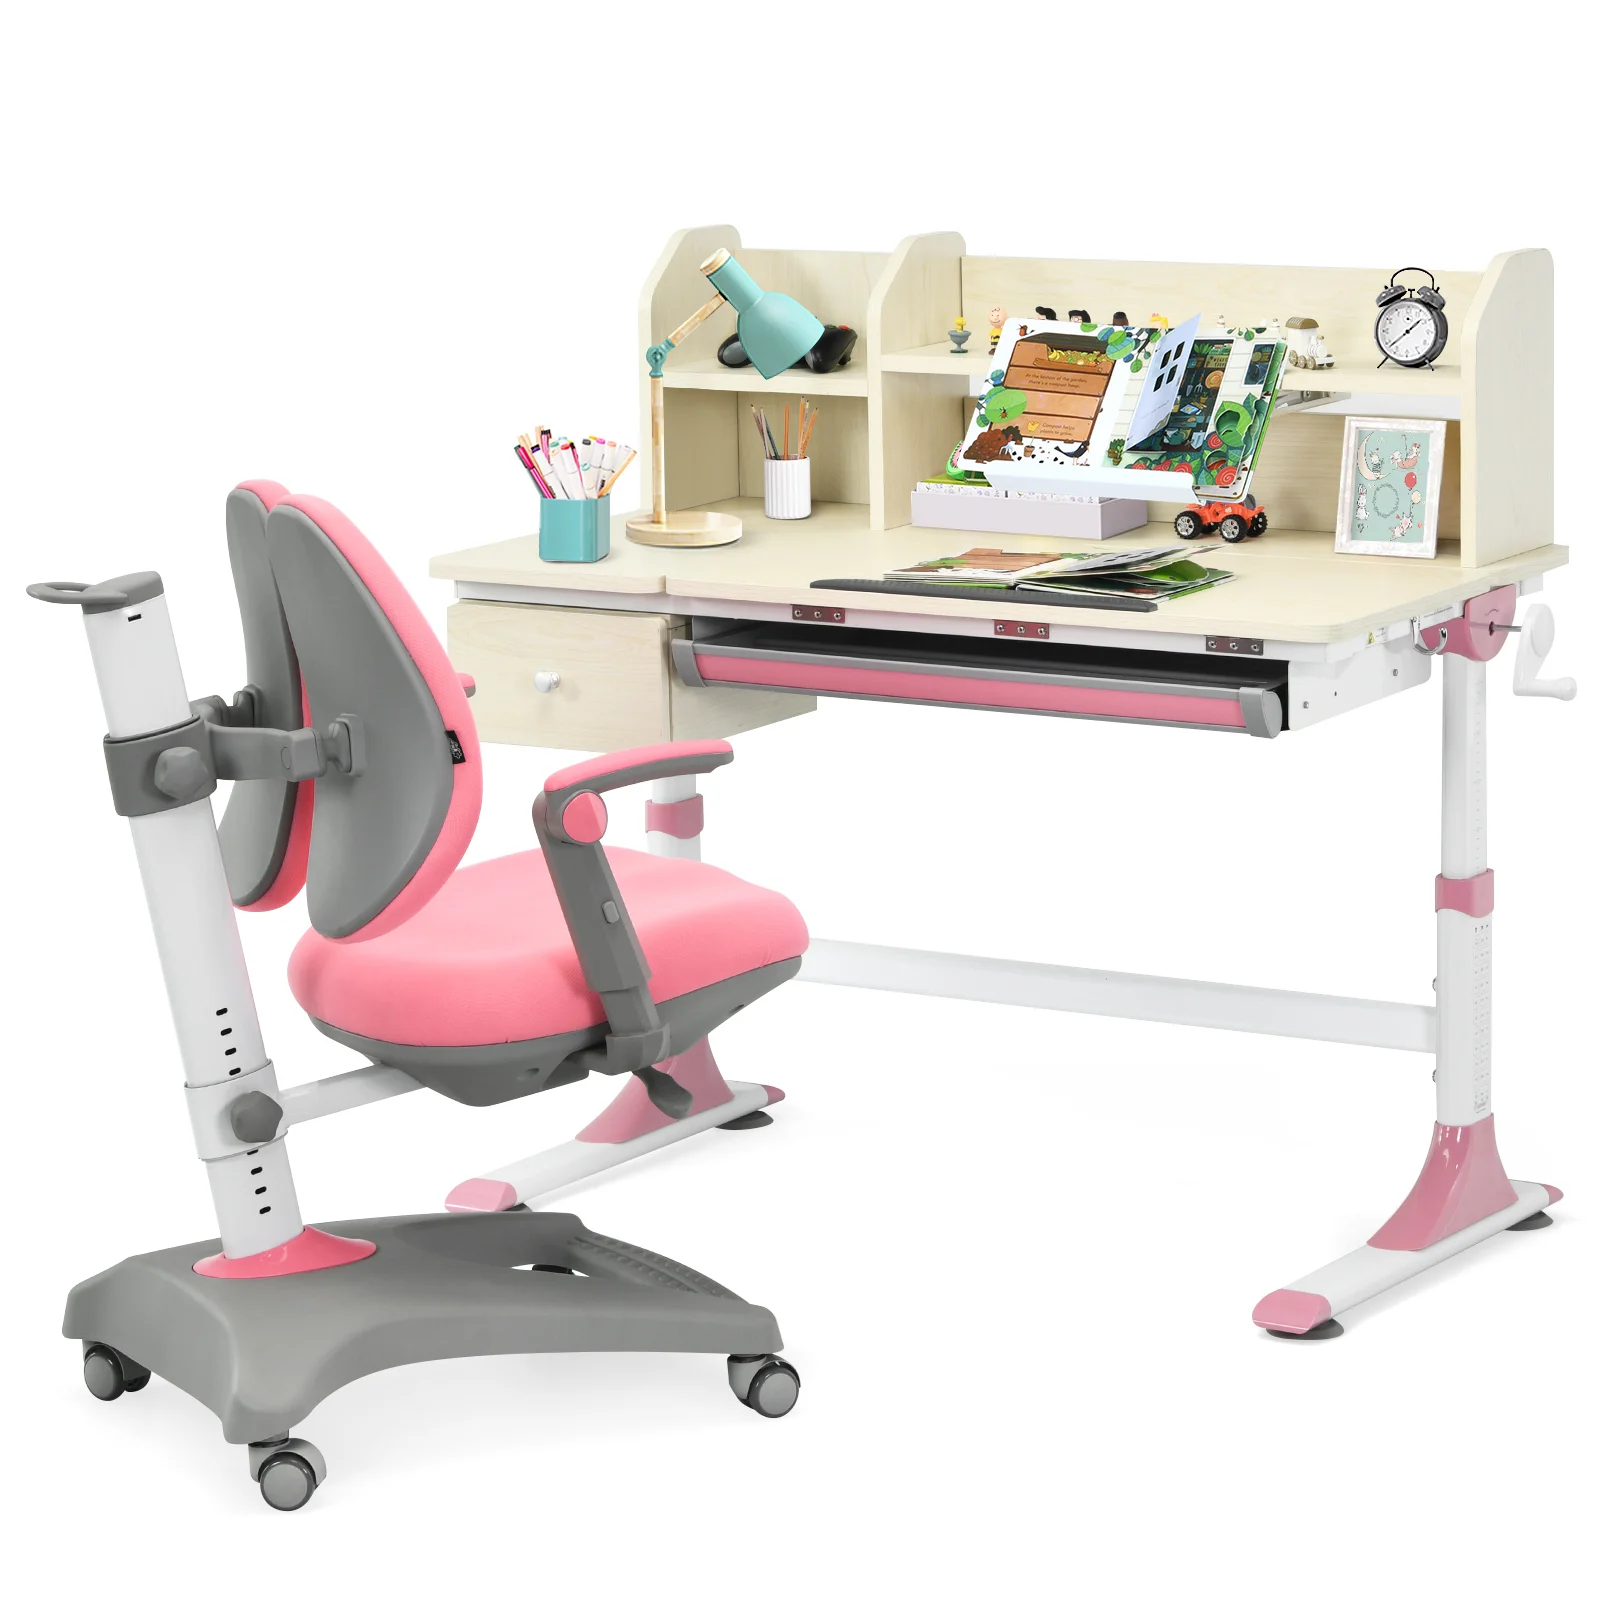 

Детский письменный стол Honeyjoy с регулируемой высотой, учебный стол и стул с книжной полкой, розовый HW67588PK + HW67591PK